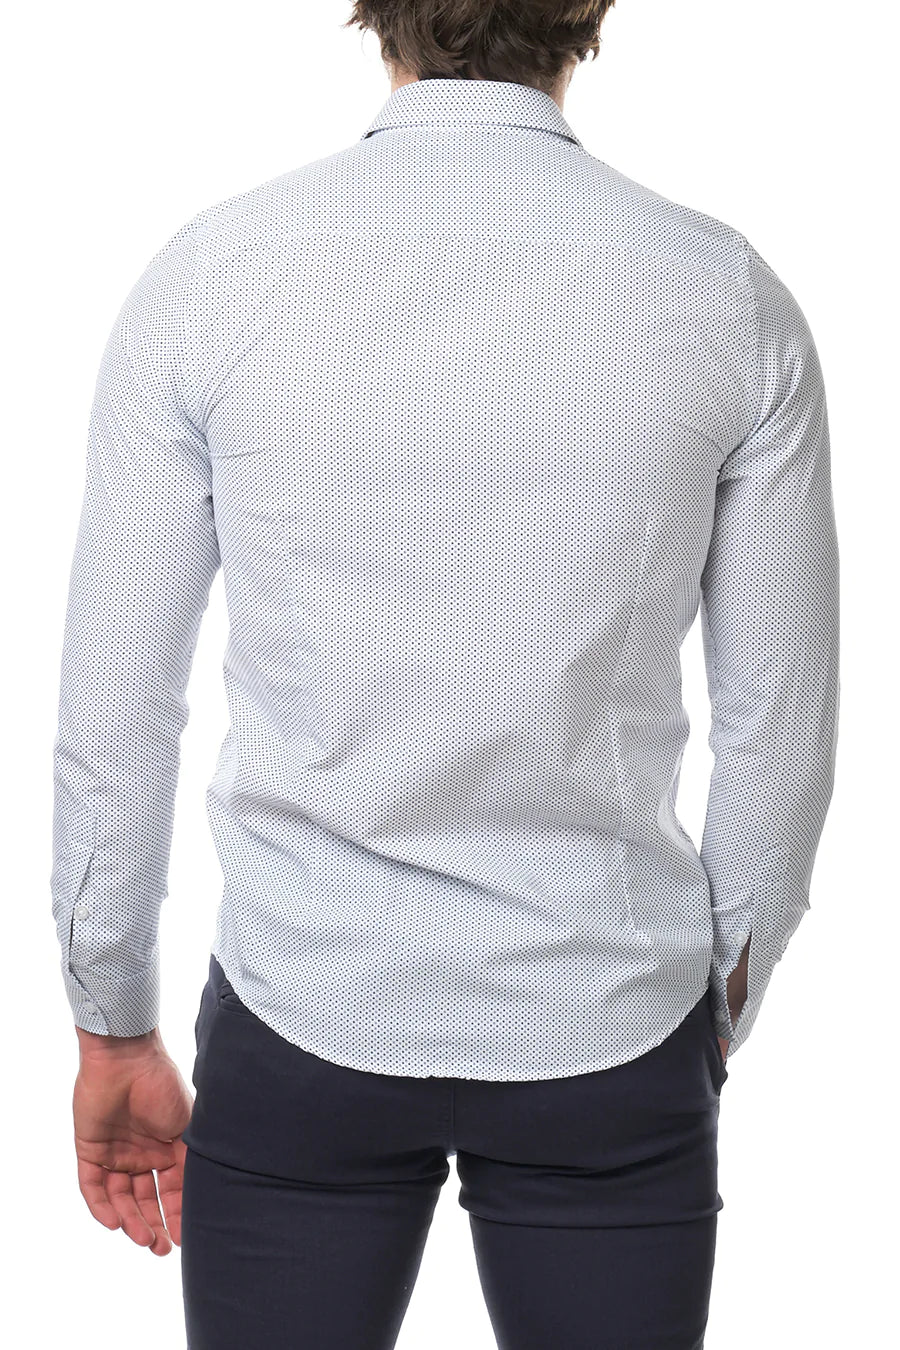 Ανδρικό πουκάμισο Nigel, Λευκό 4